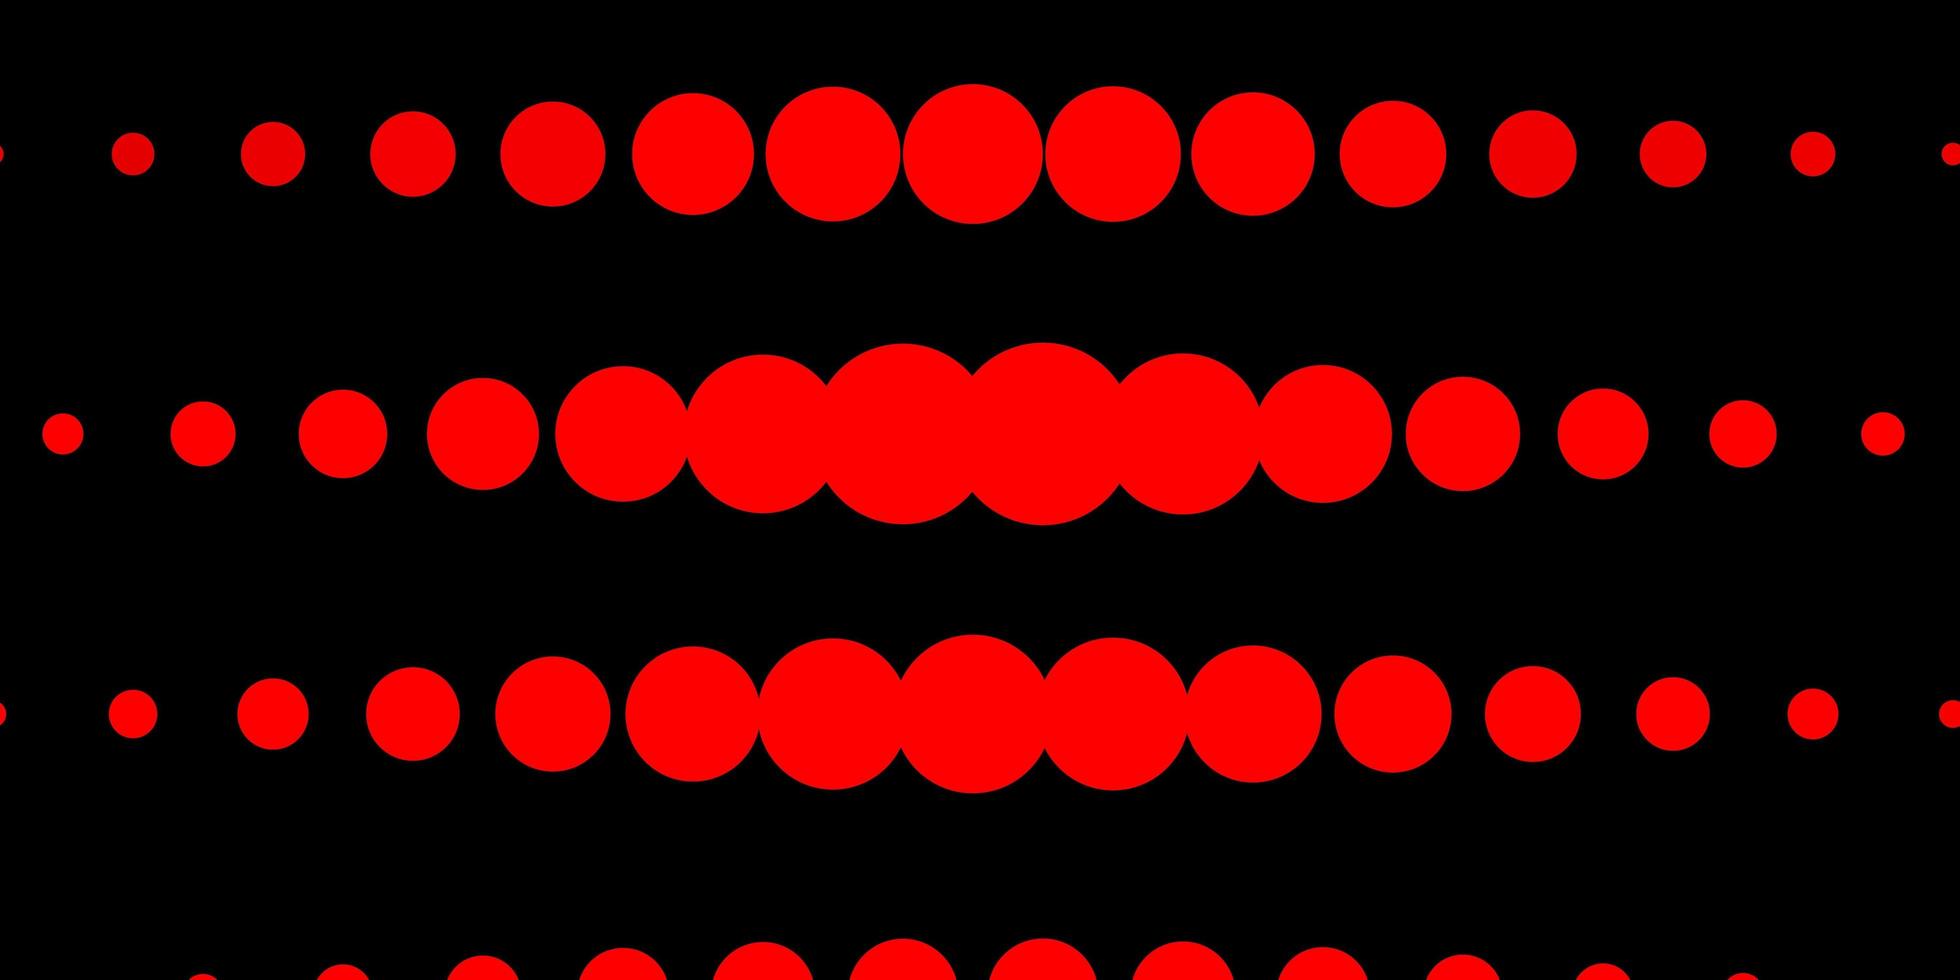 layout de vetor vermelho e amarelo escuro com formas de círculo.